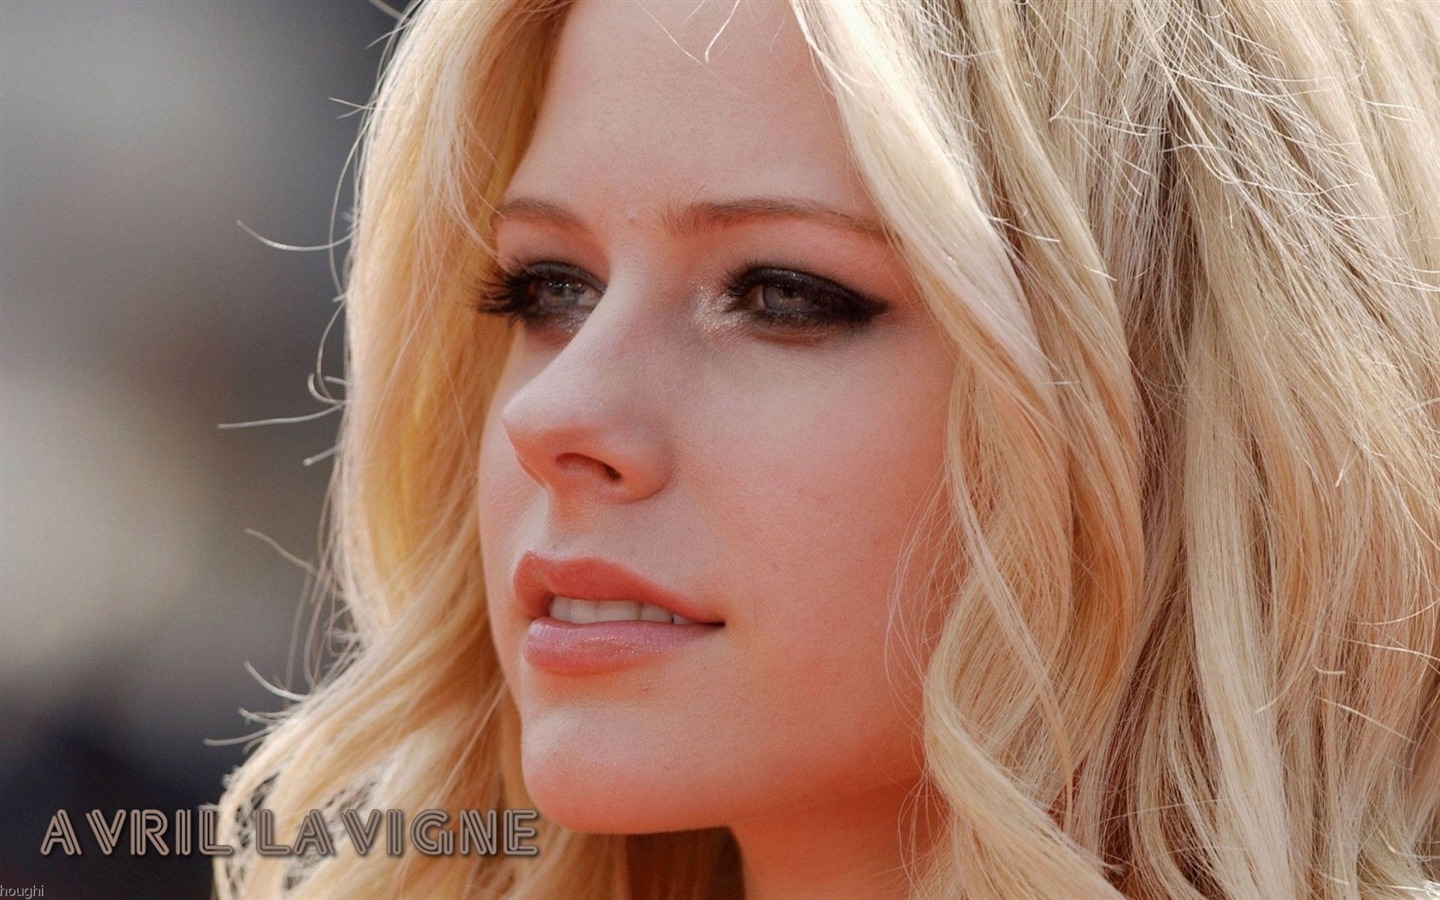 Avril Lavigne 艾薇儿·拉维妮 美女壁纸33 - 1440x900